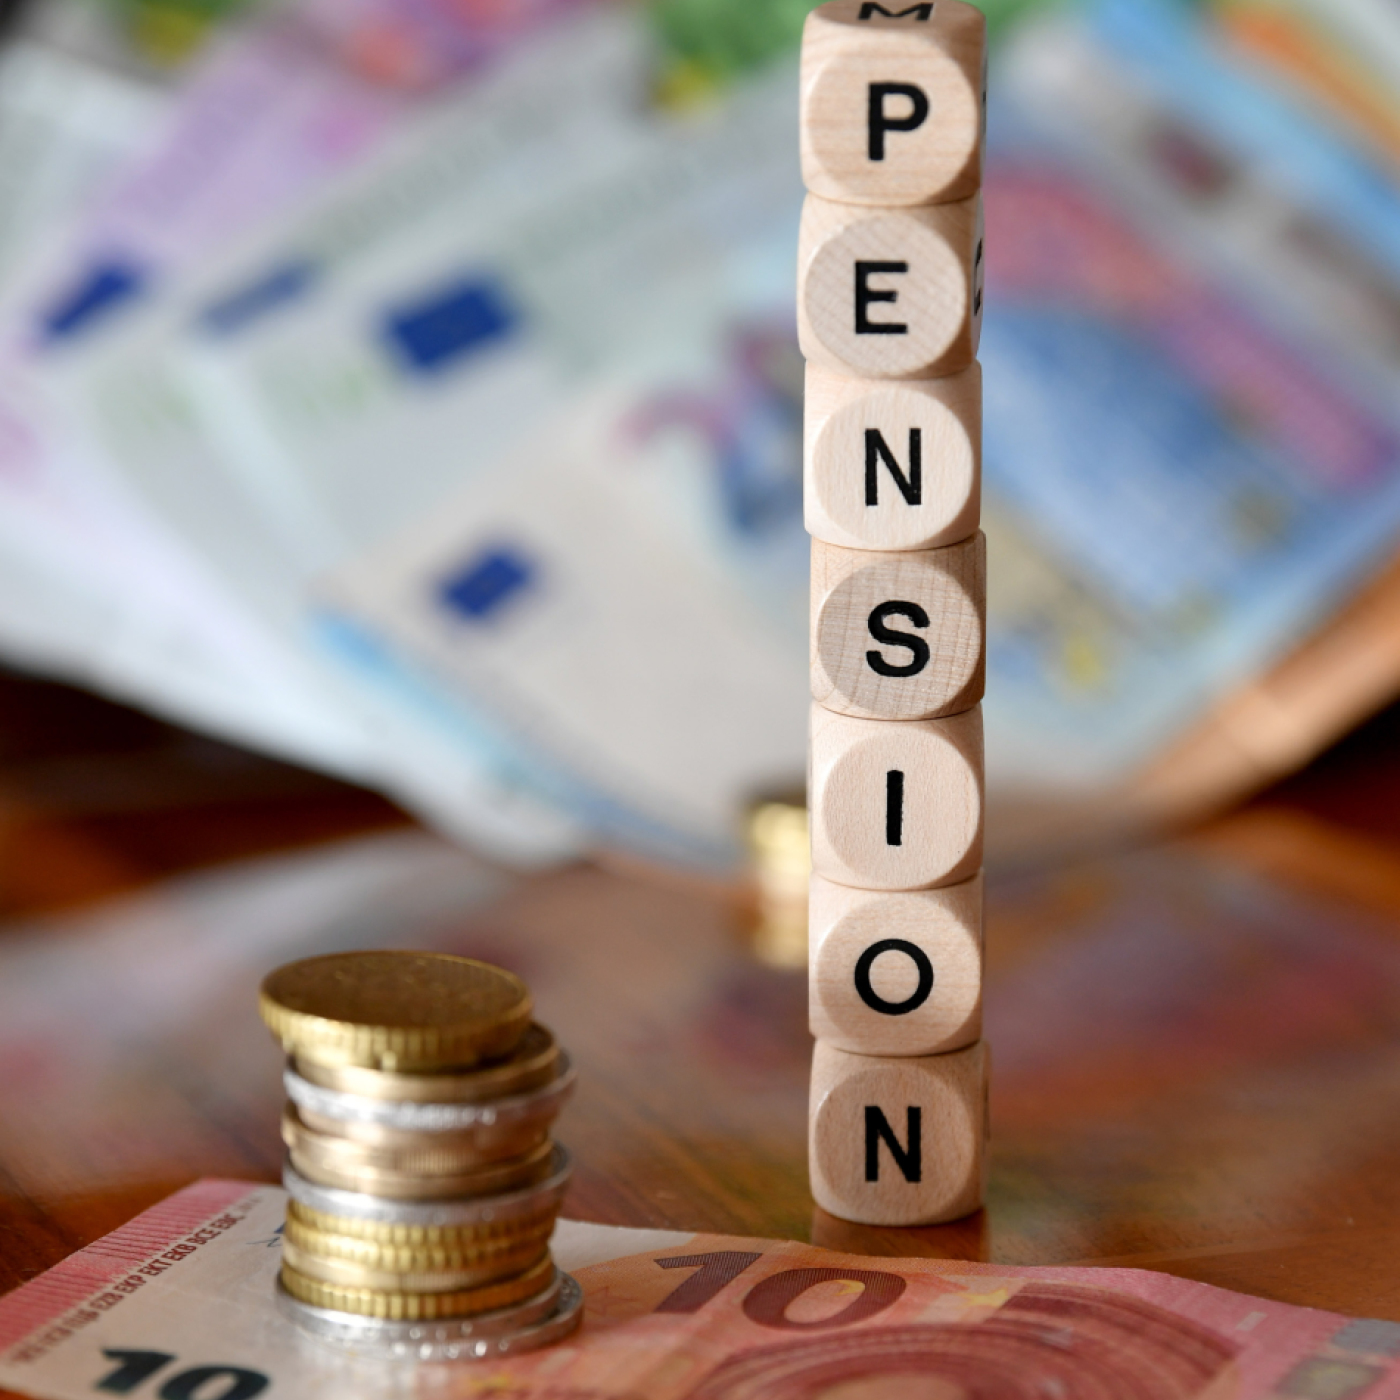 drei viertel der jungen besorgt um ihre pension